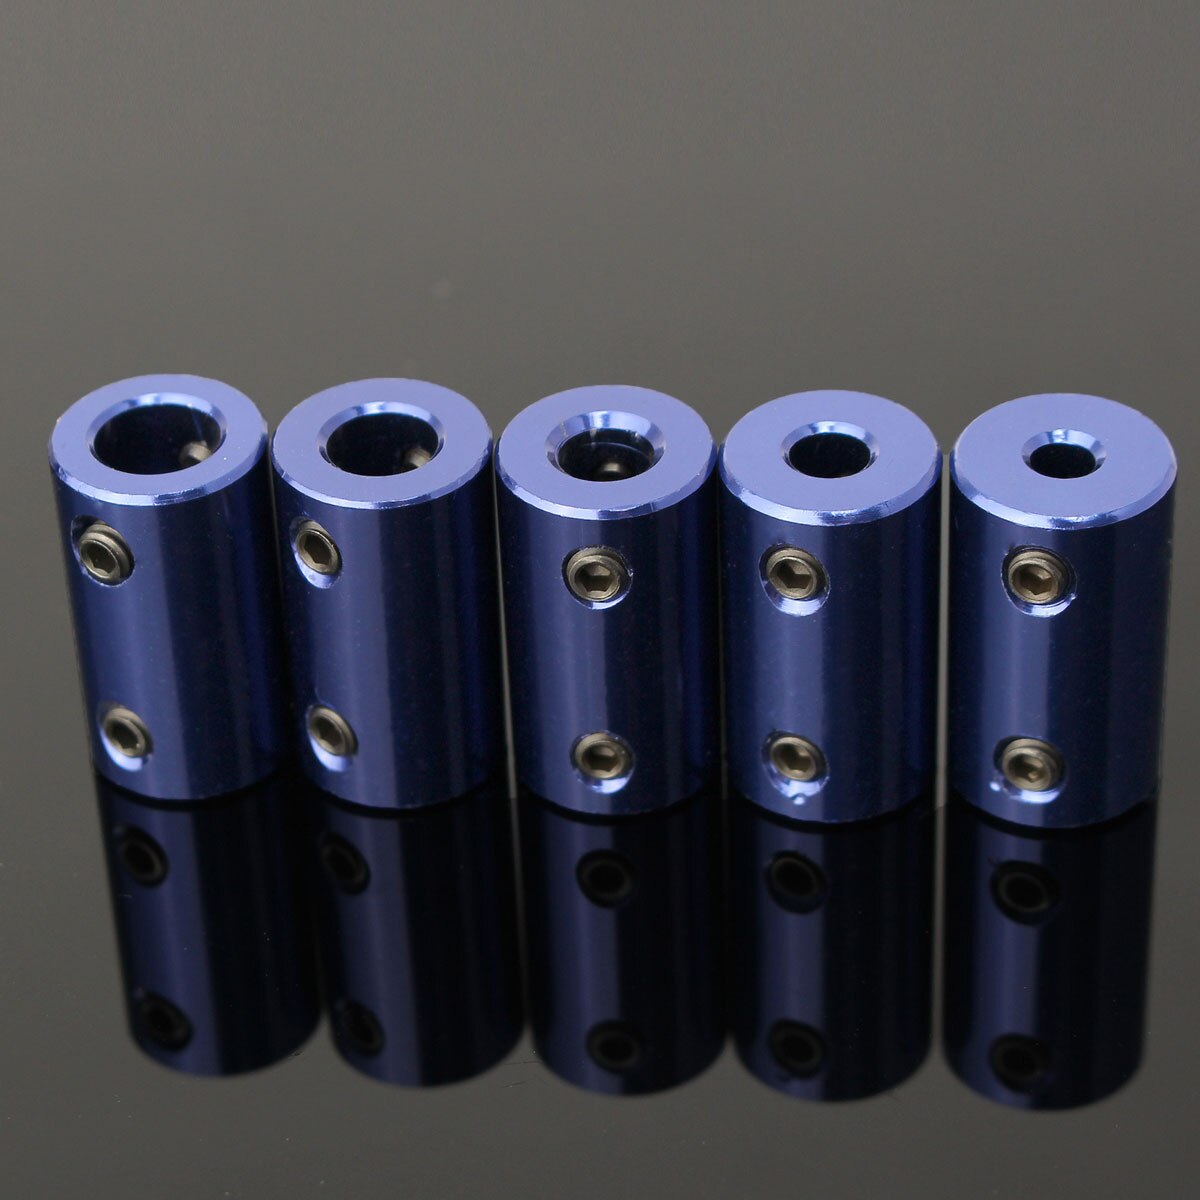 1 stk. blå aluminiumslegering motorakselkobling 4/5/6/8mm koblinger stålstålkobling drevmotorforlængelsesaksel